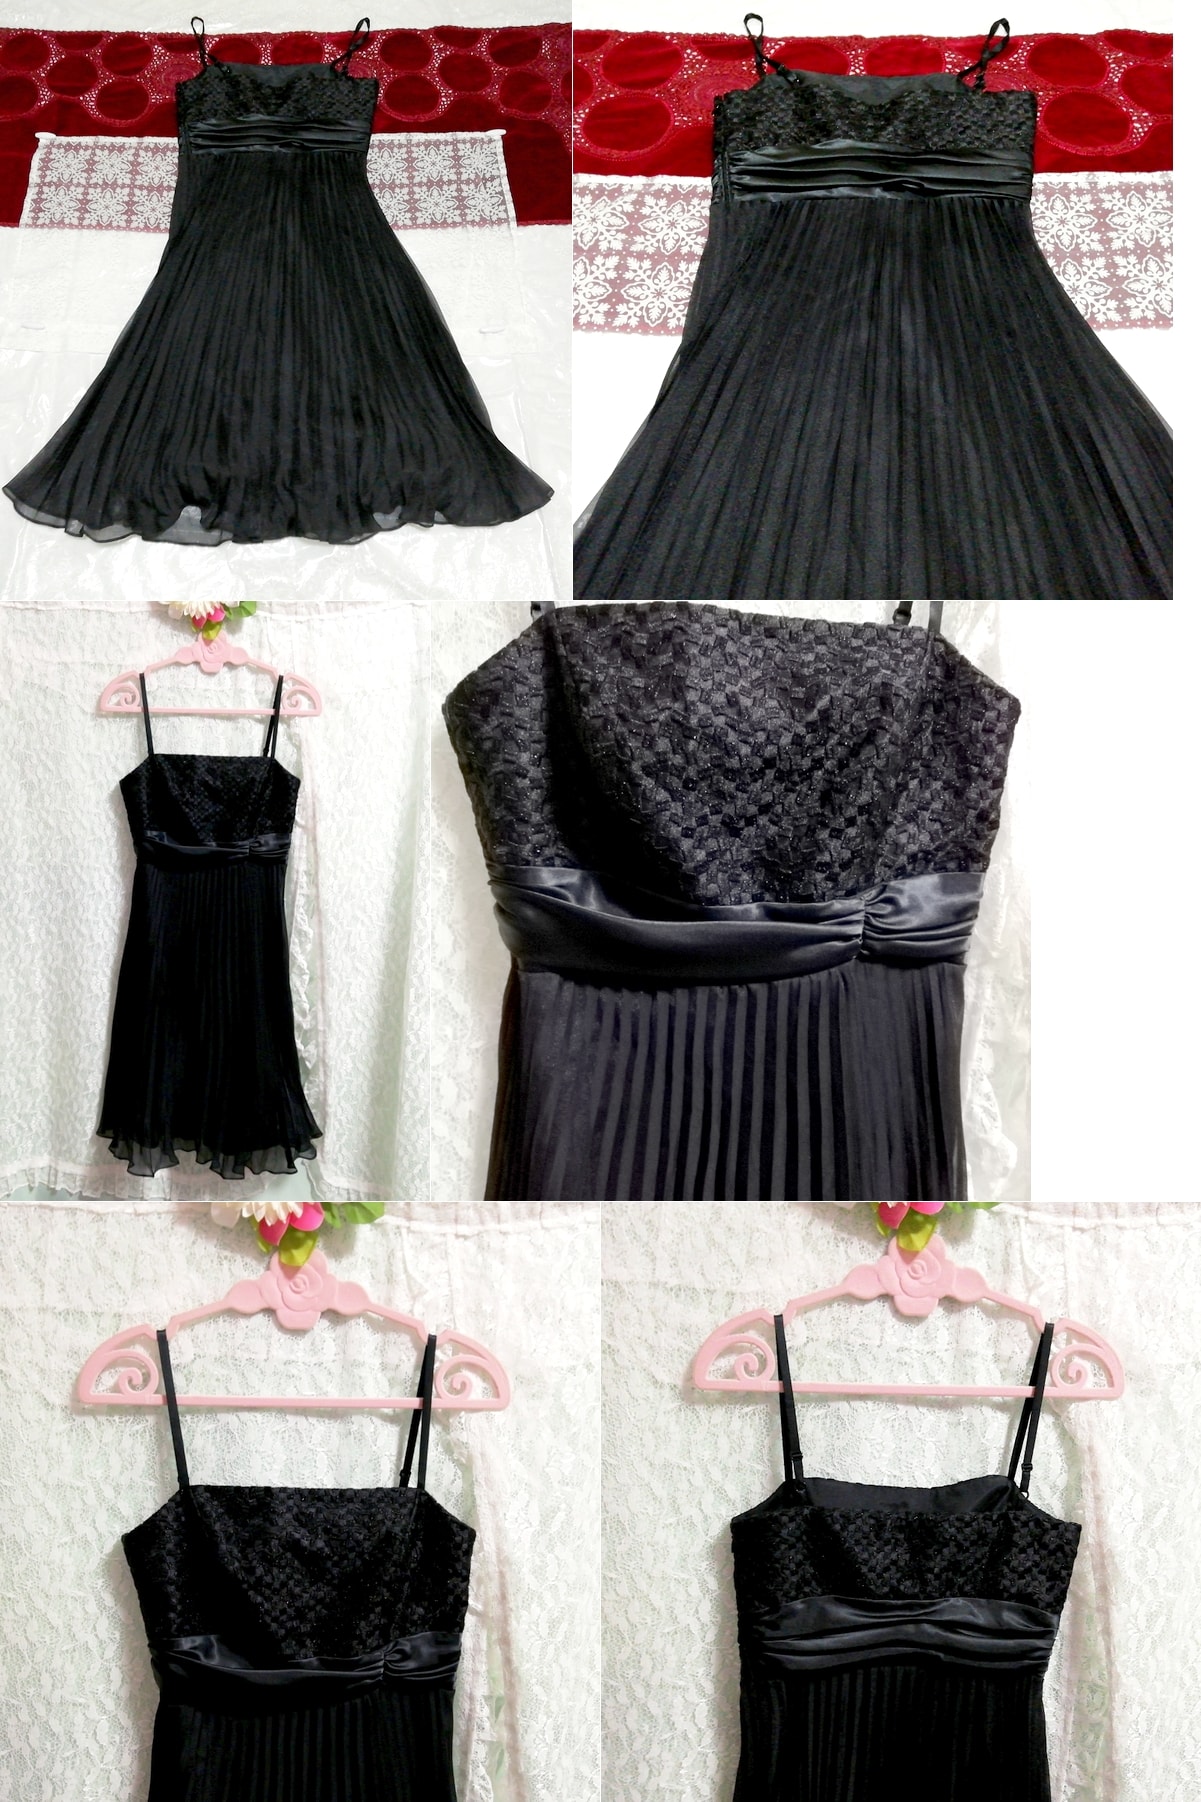 黒キャミソールワンピースシフォンネグリジェドレス Black camisole chiffon negligee dress, フォーマル, カラードレス, 黒